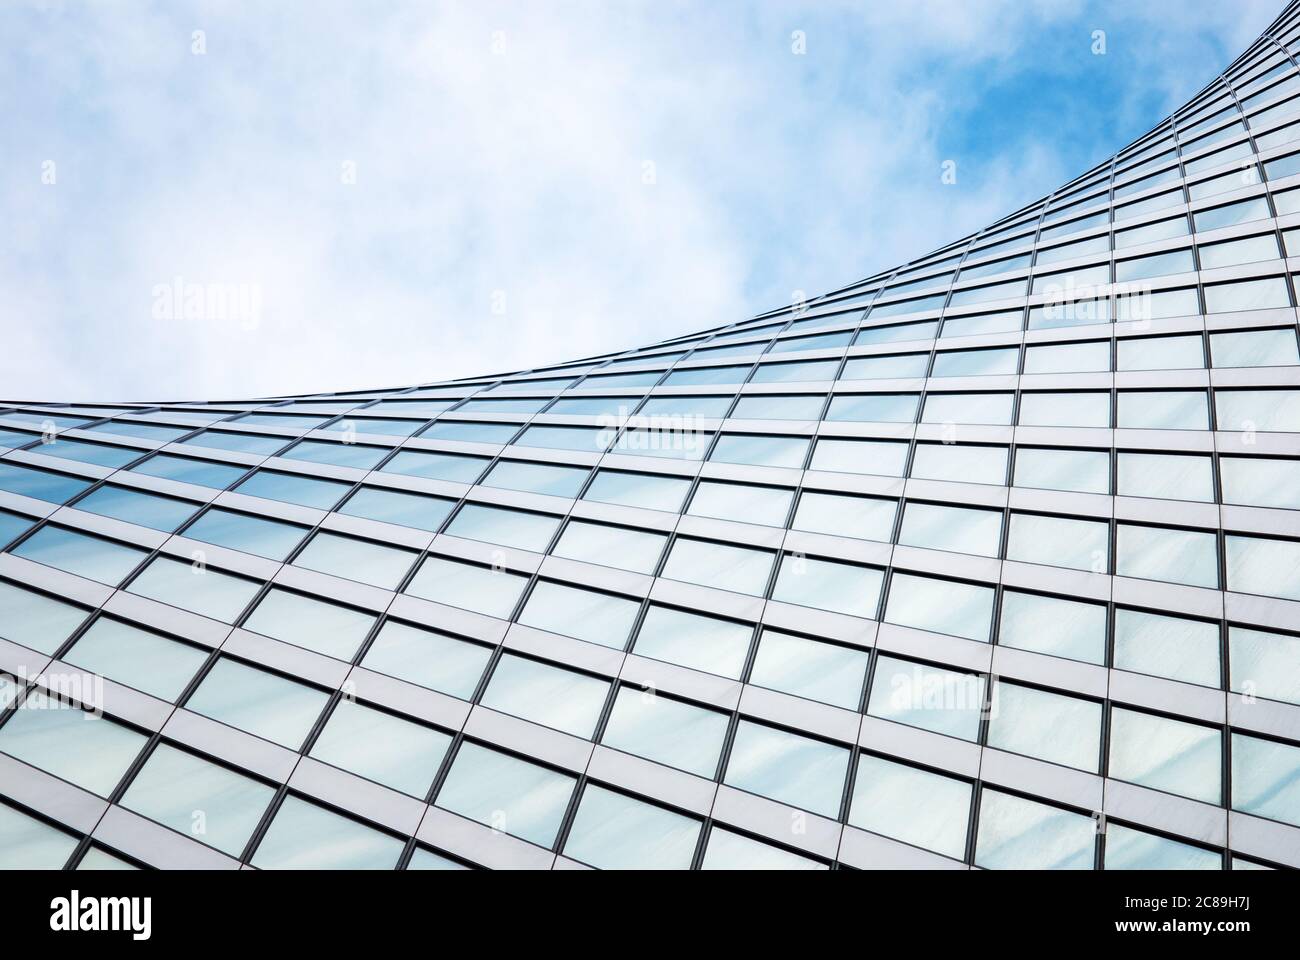 Abstrakte moderne Architektur, Glas-Außenstruktur, wellenförmige Gebäudedetails in blauem Himmel Stockfoto